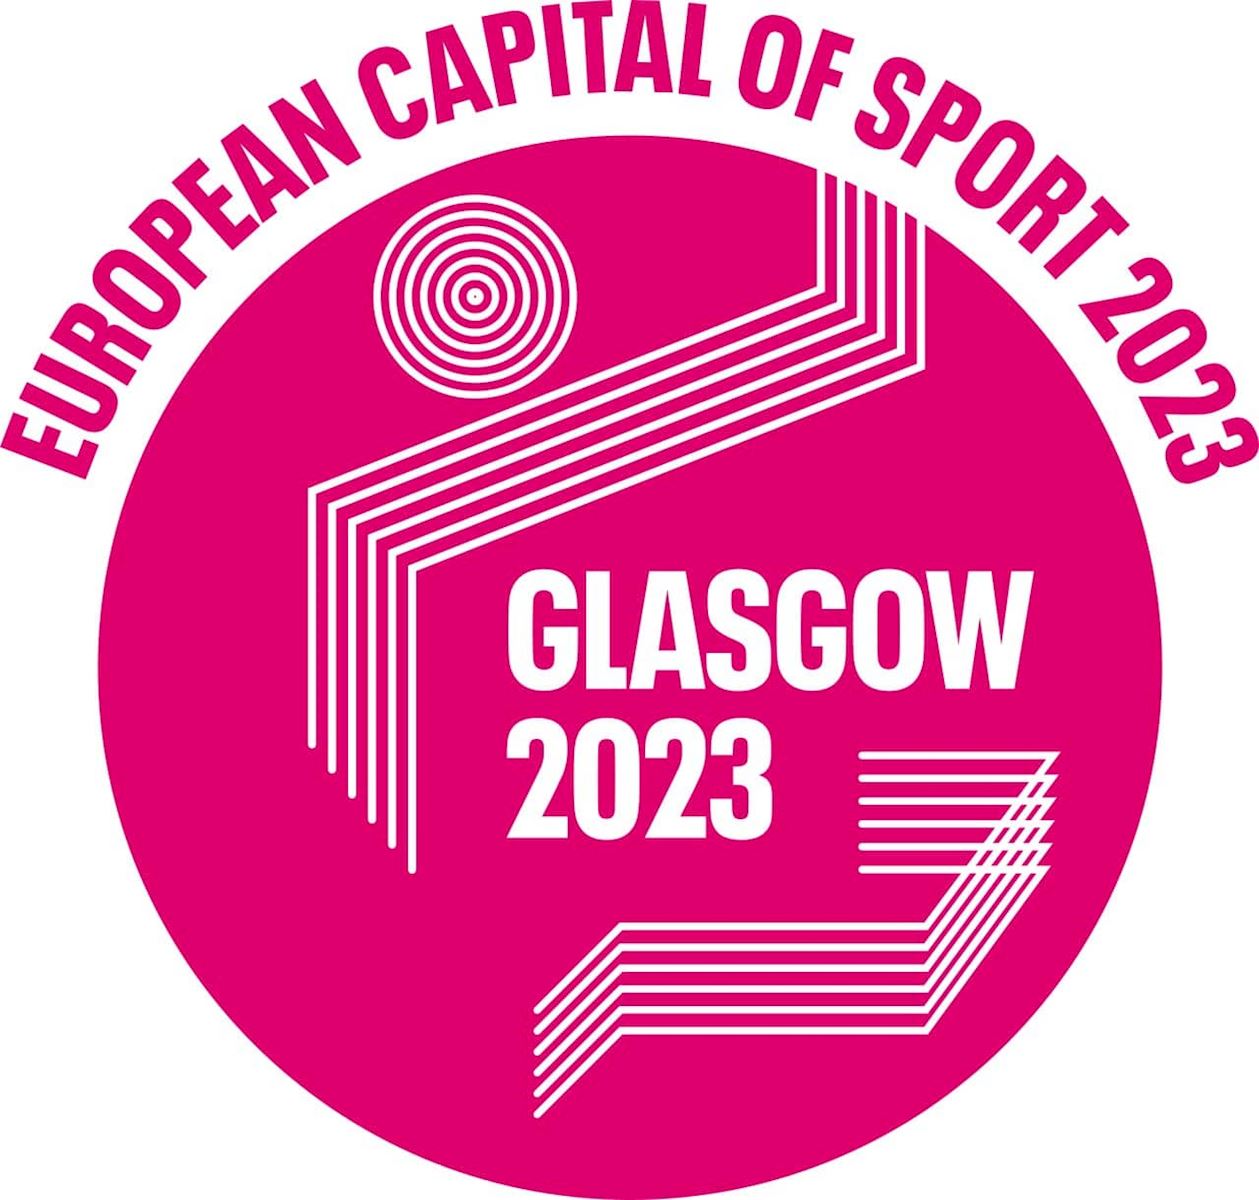 Glasgow, European Sport Capital 23